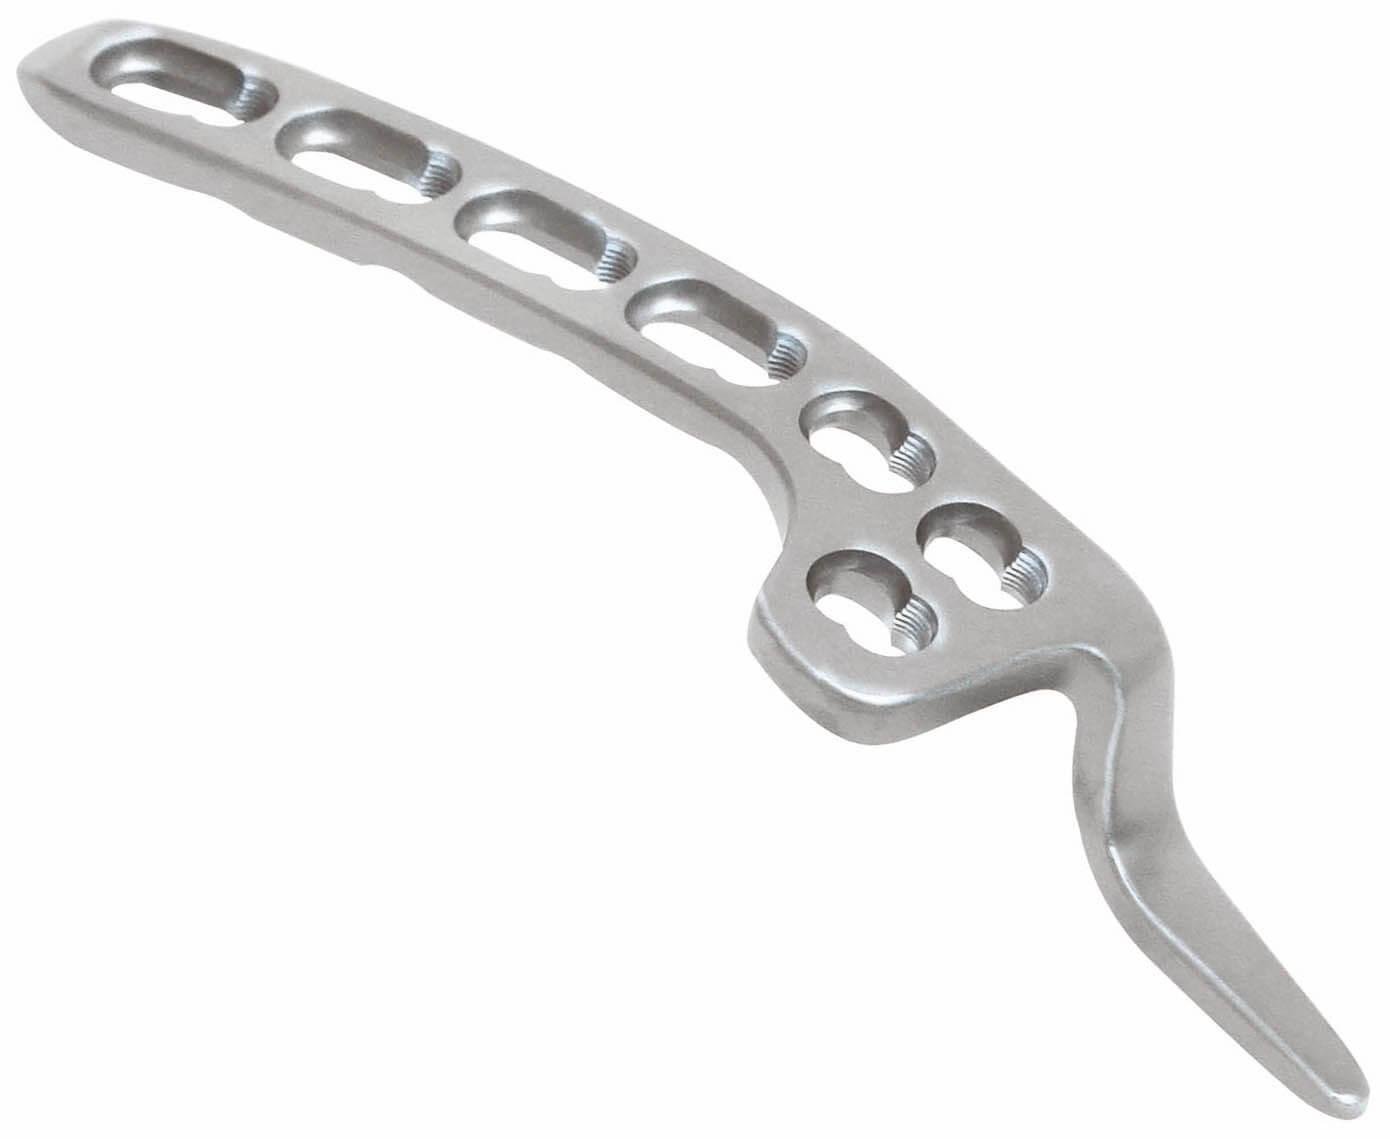 Clavicle hook locking plate II - Placa de bloqueo para clavícula con gancho